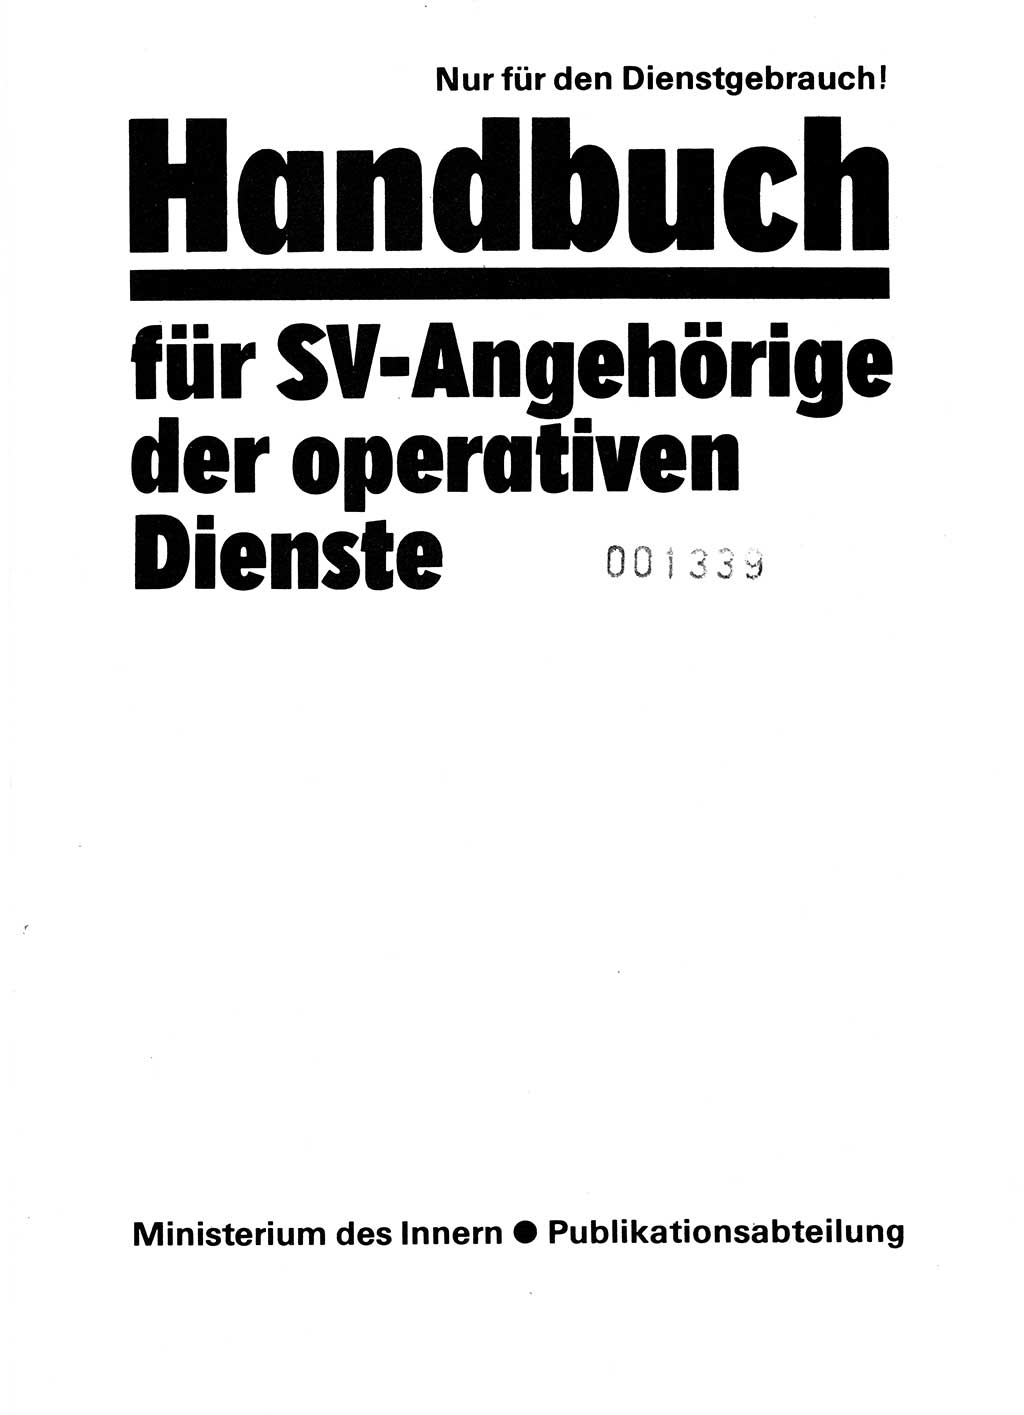 Handbuch für operative Dienste, Abteilung Strafvollzug (SV) [Ministerium des Innern (MdI) Deutsche Demokratische Republik (DDR)] 1981, Seite 3 (Hb. op. D. Abt. SV MdI DDR 1981, S. 3)